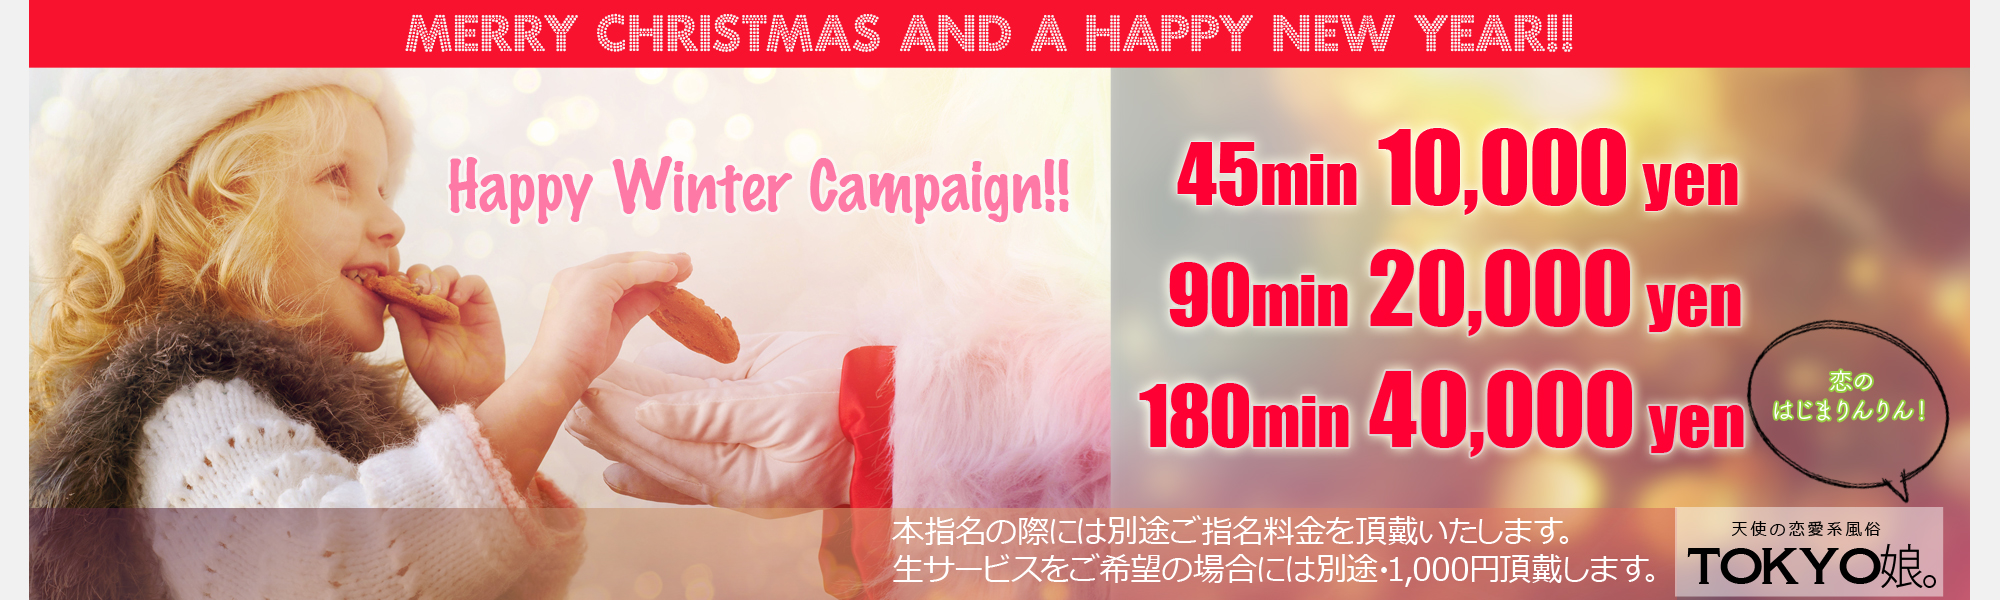 錦糸町ホテヘル・デリヘル TOKYO娘。2111_Happy Winter Campaign